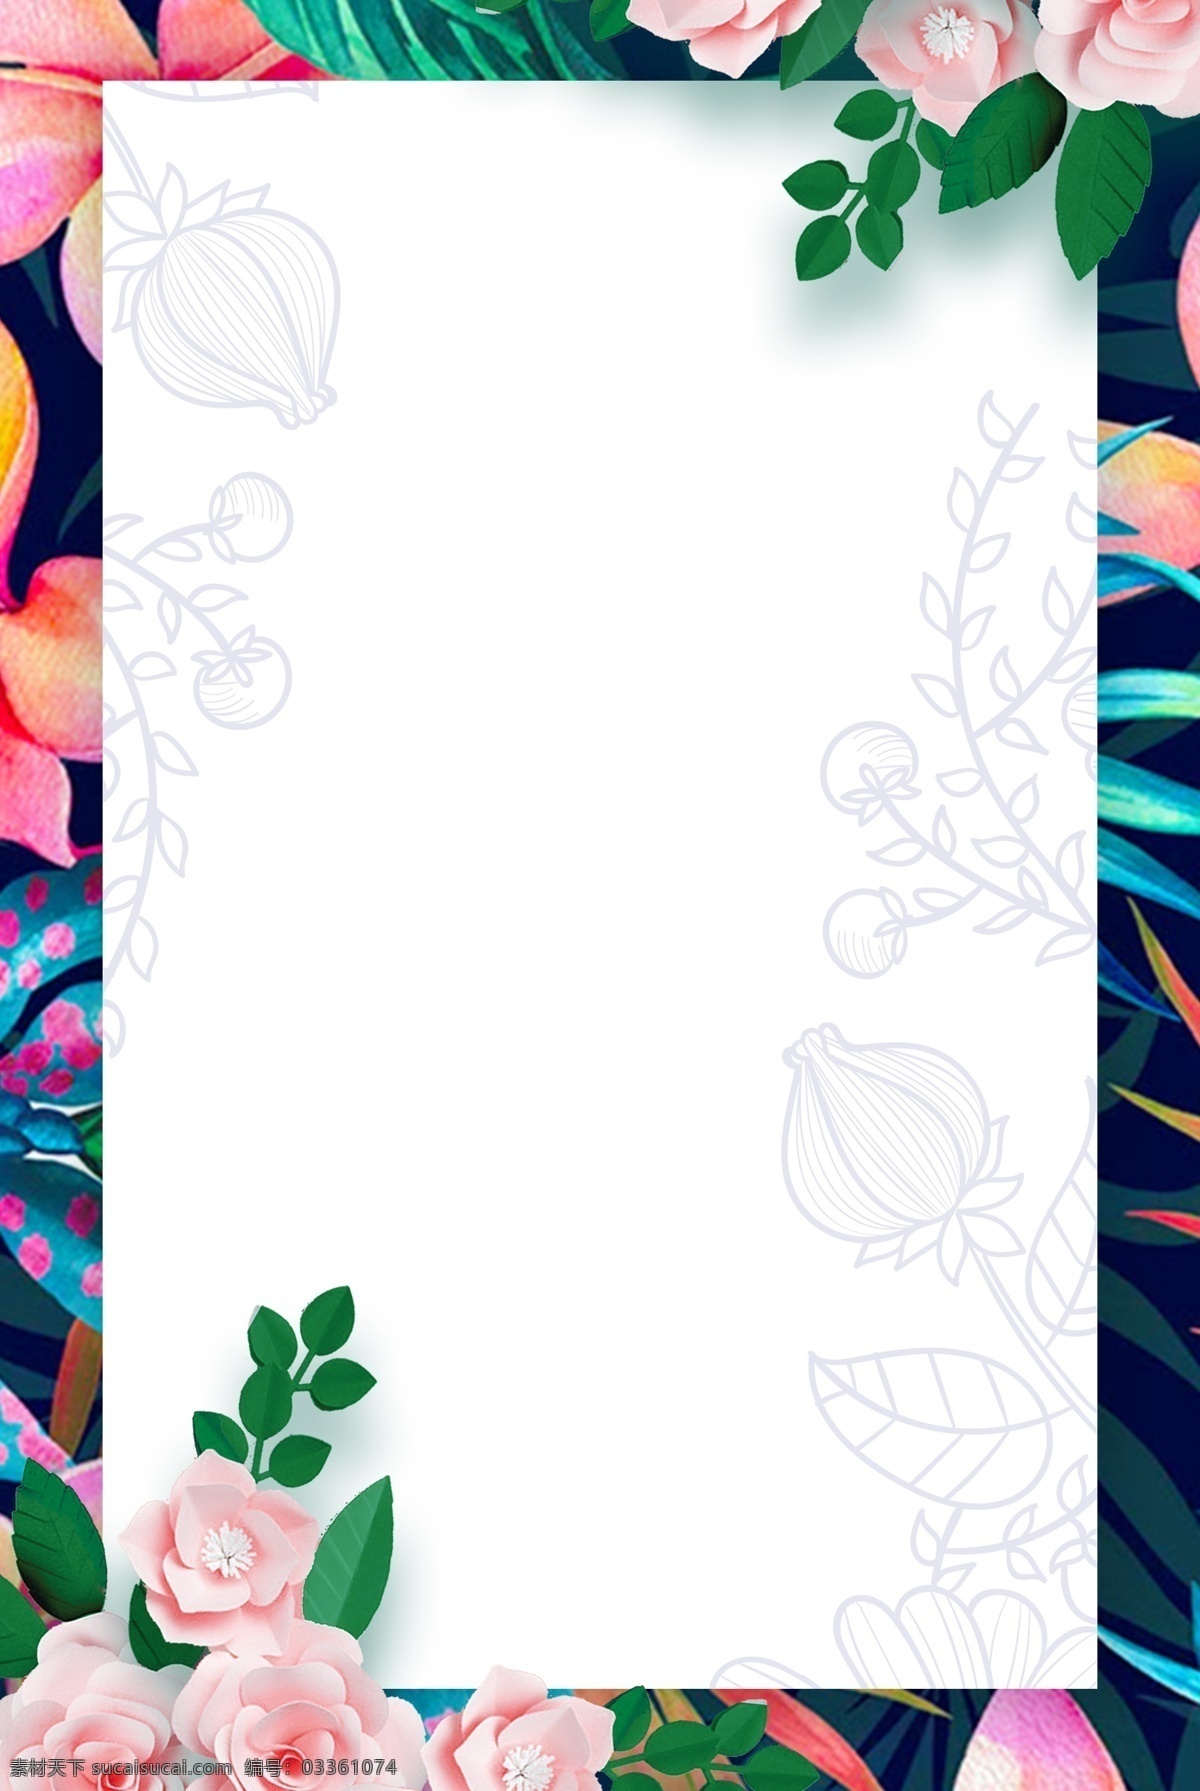 简约 小 清新 花朵 花卉 背景 海报 清新花朵 小清新 绿植边框 花卉背景 手绘 手绘绿植 鲜花